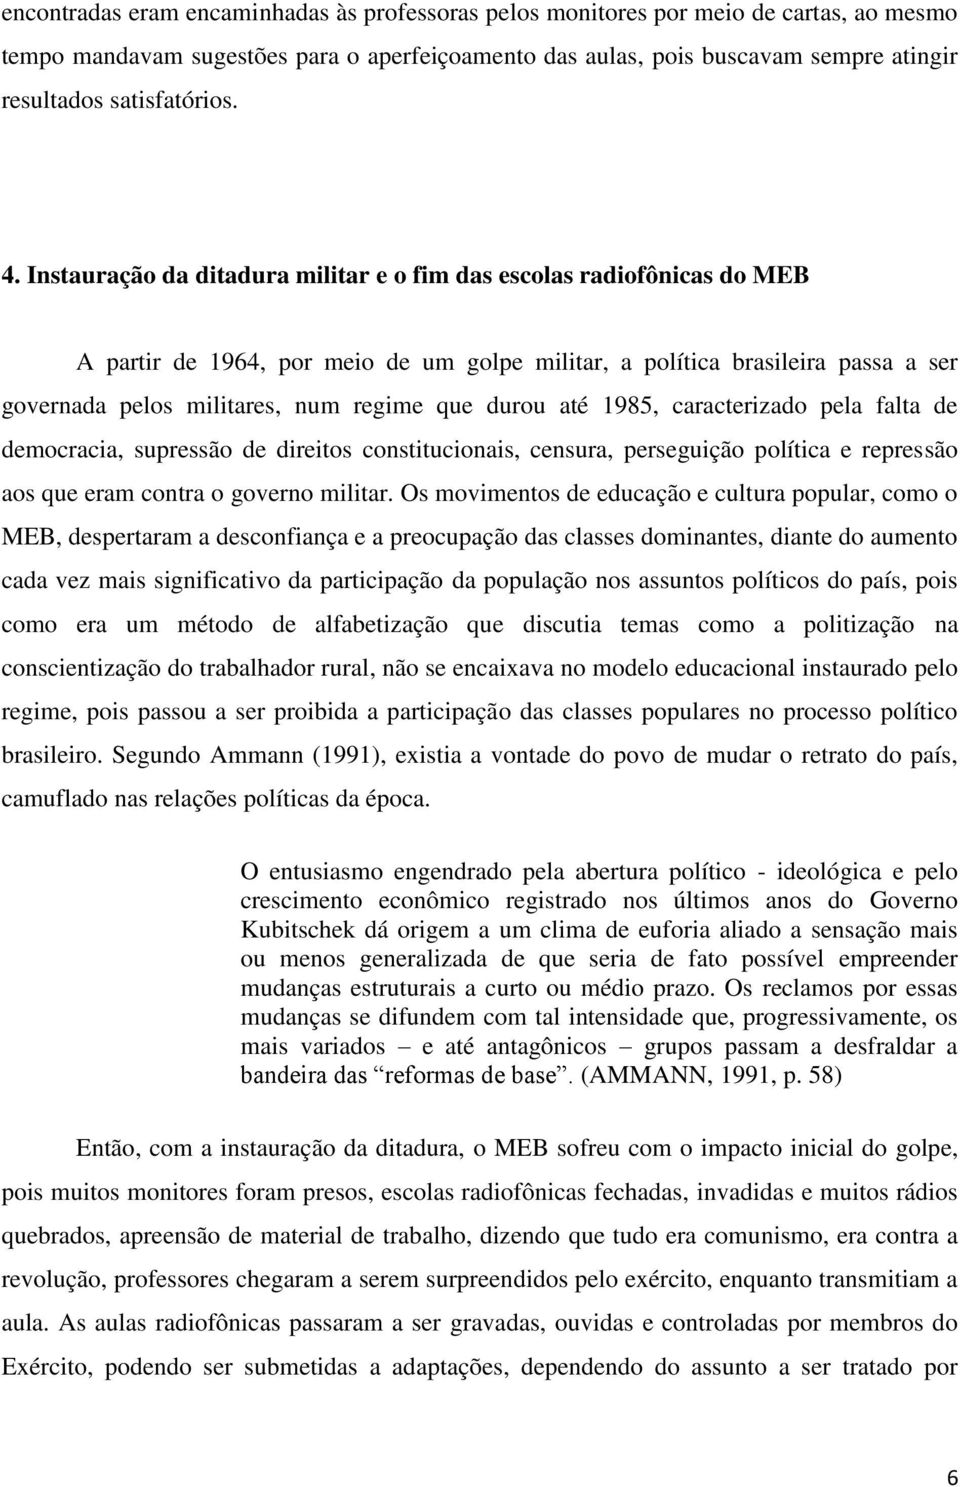 Instauração da ditadura militar e o fim das escolas radiofônicas do MEB A partir de 1964, por meio de um golpe militar, a política brasileira passa a ser governada pelos militares, num regime que